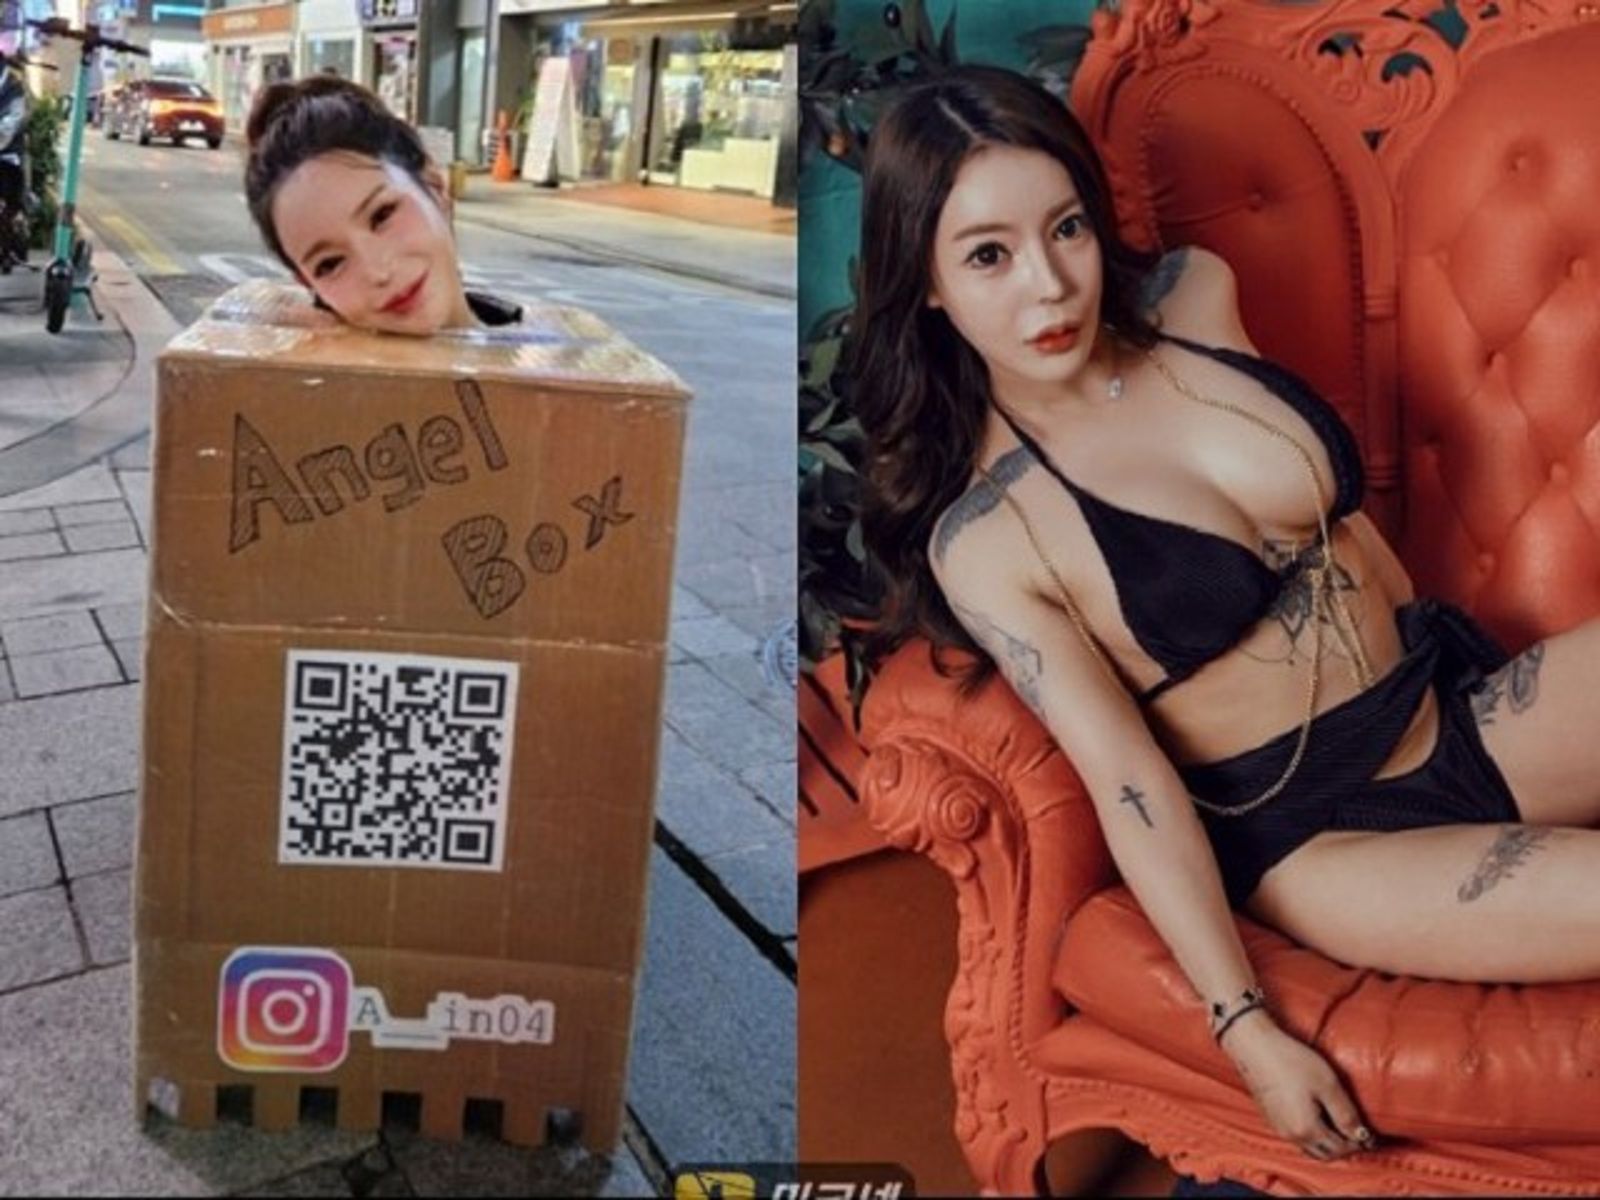 [新聞] AV女優全裸只罩「箱子衣」上街 胸部任人